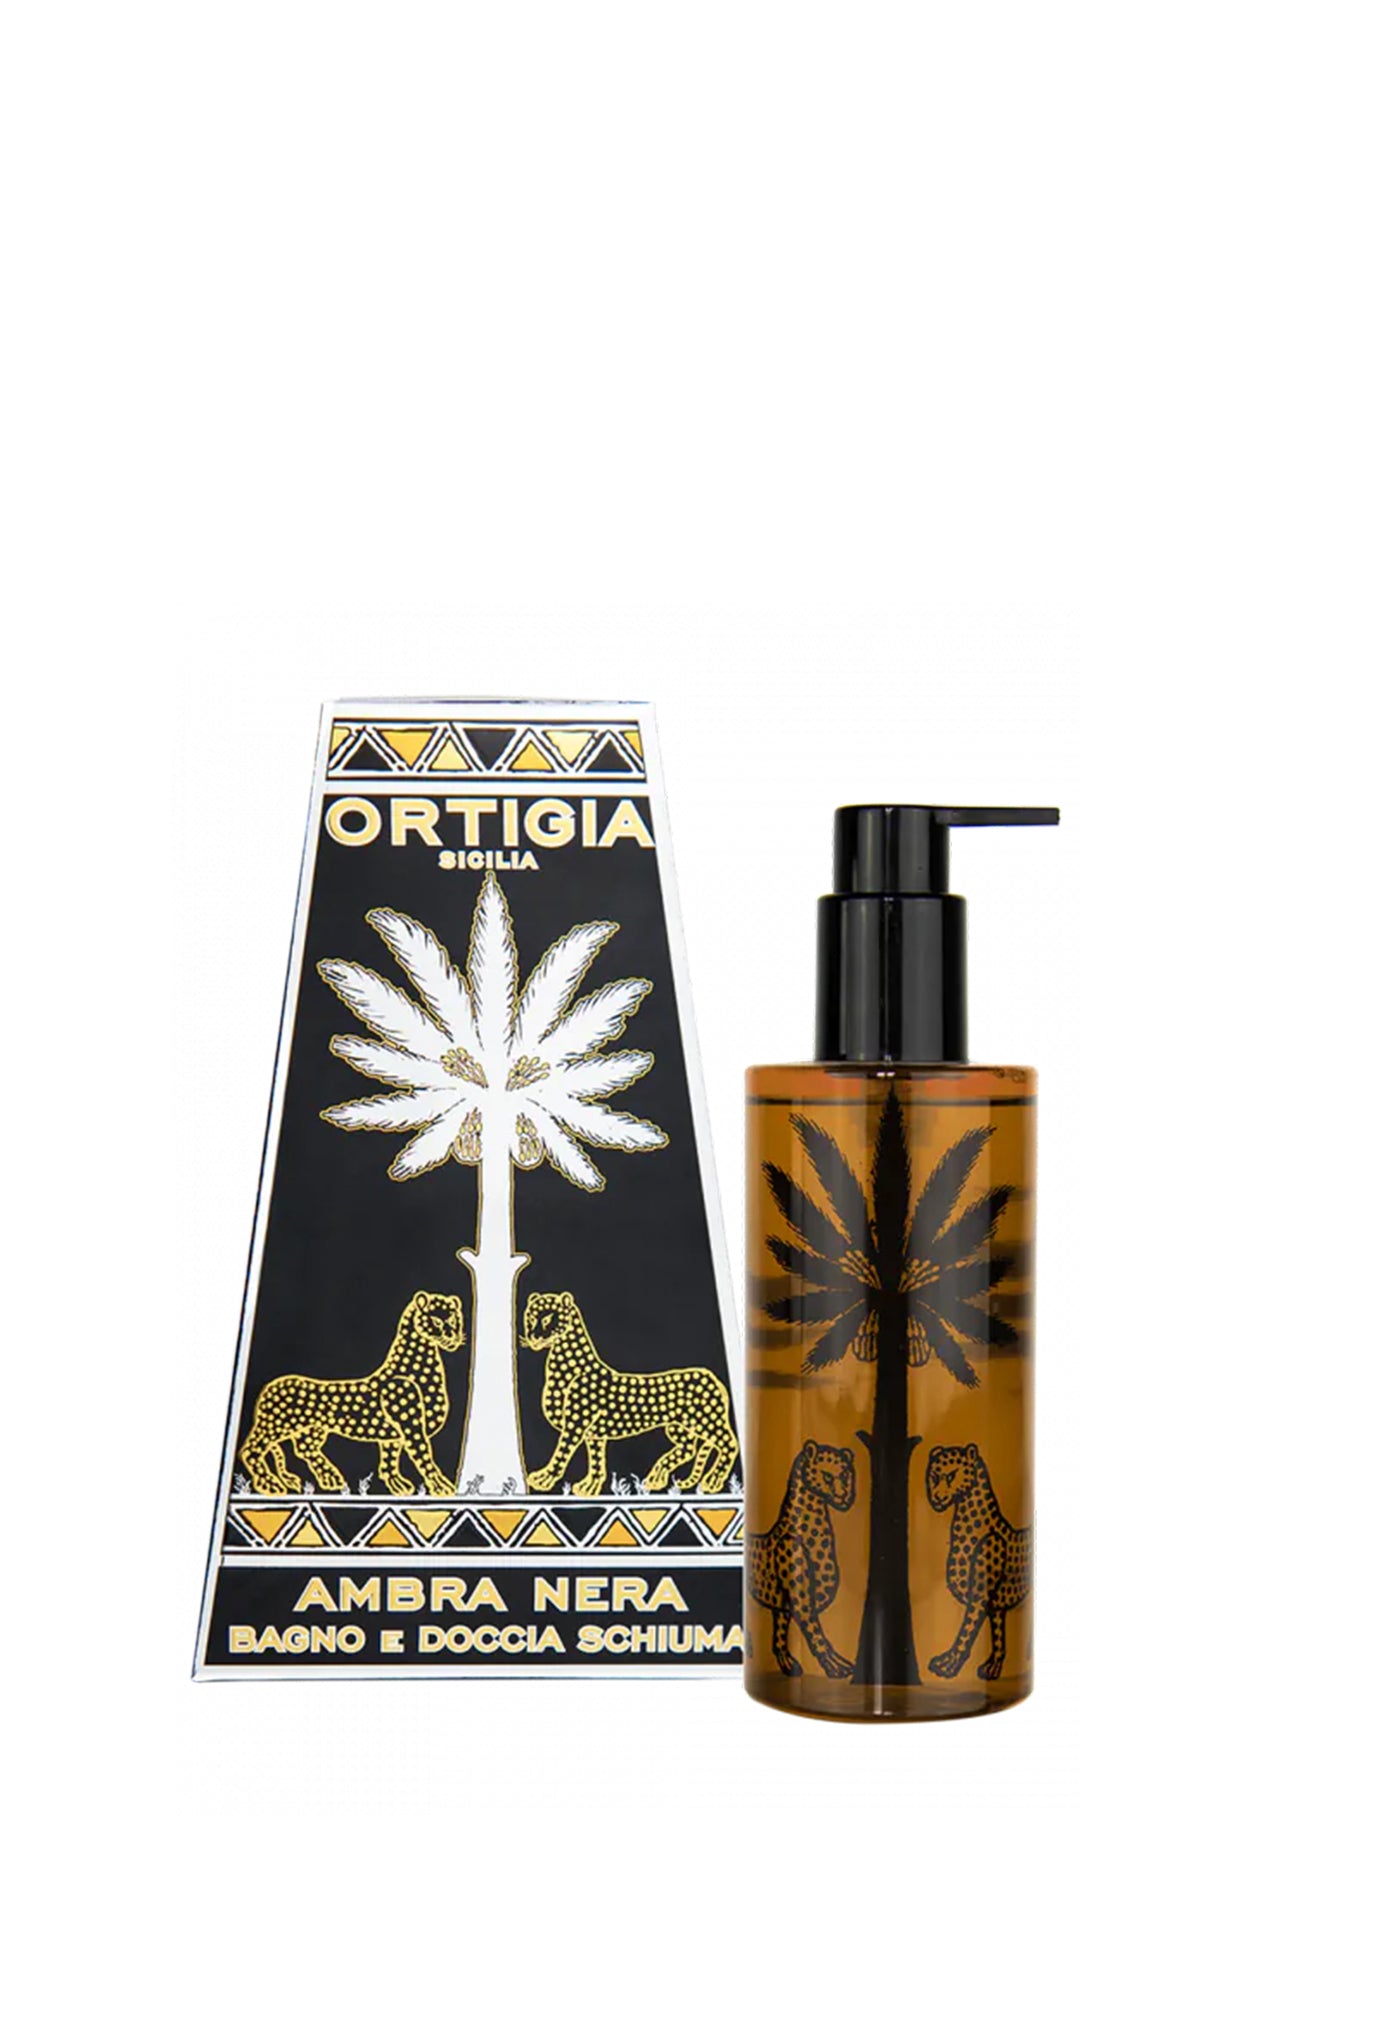 Ambra Nera Shower Gel 250ml sold by Angel Divine